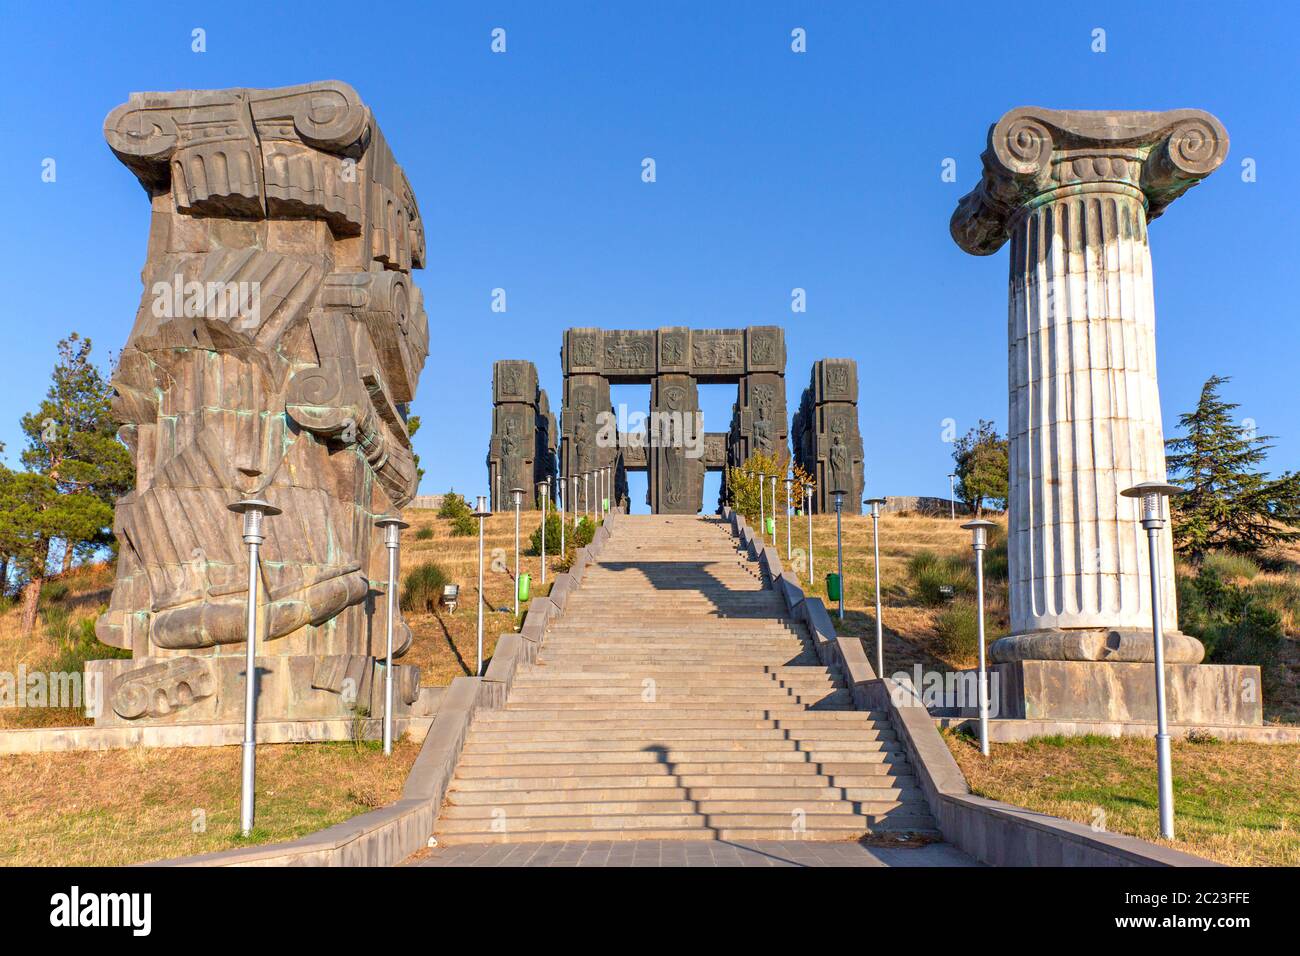 Monument known as Chronicle of Georgia or Stonehenge of Georgia, in Tbilisi, Georgia. Stock Photo